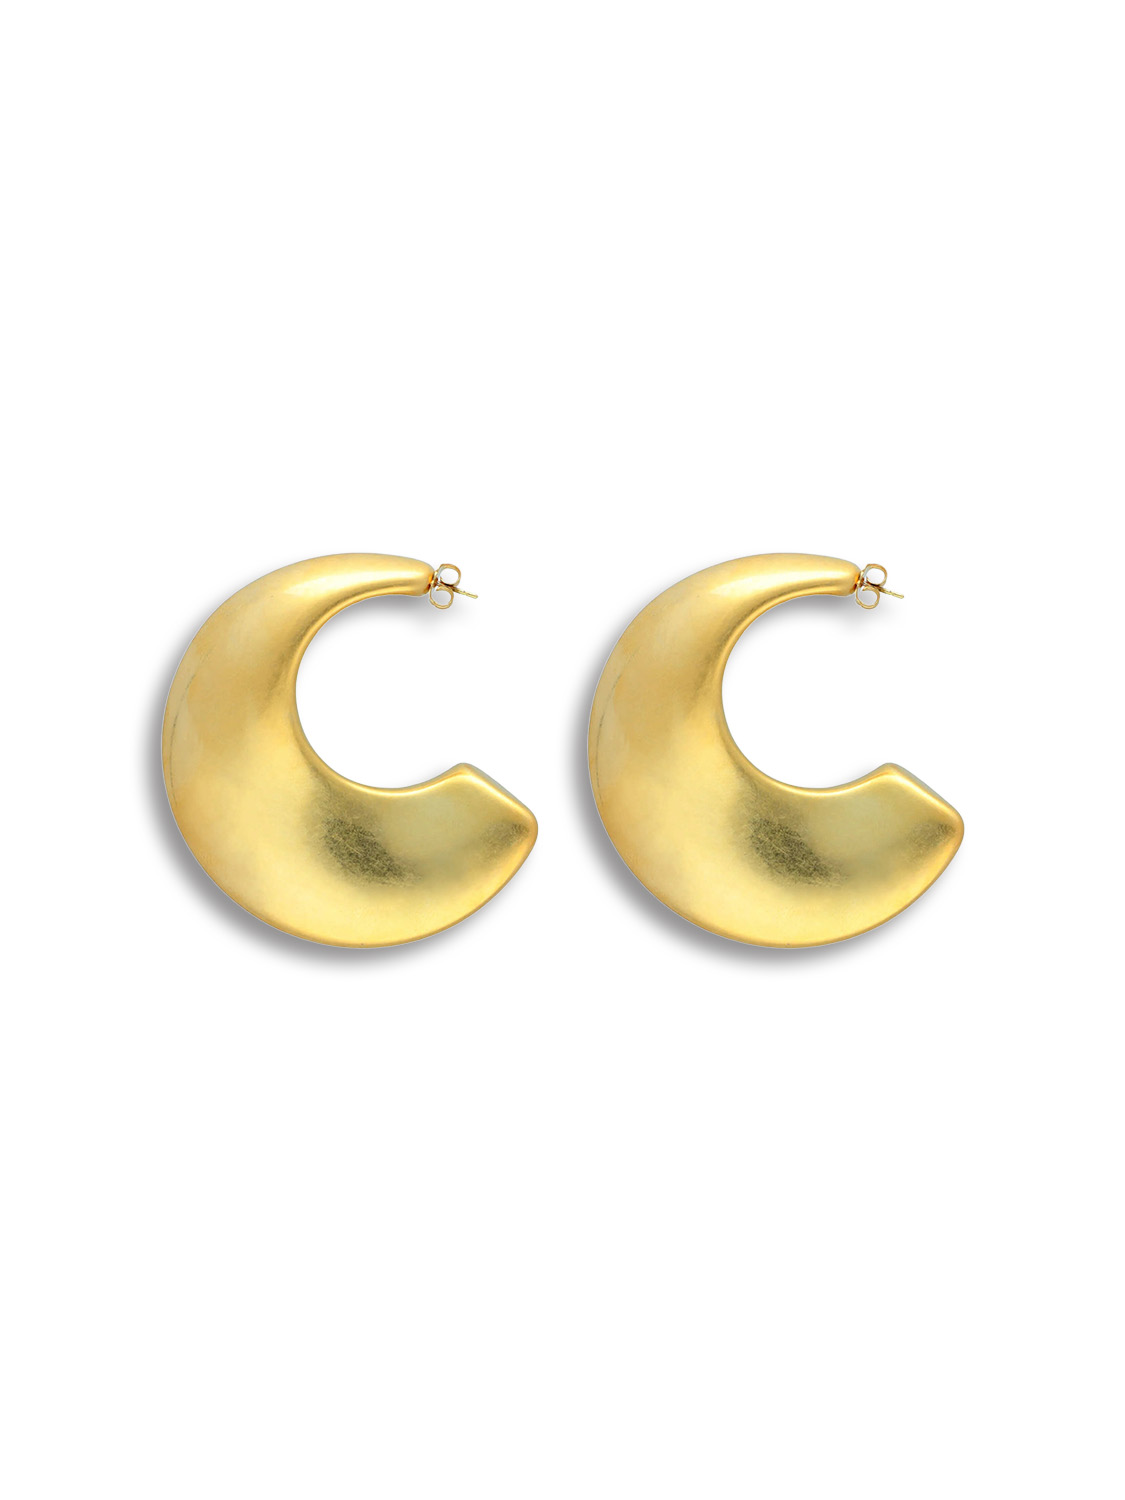 Big Moon Earring - ear studs in creole shape